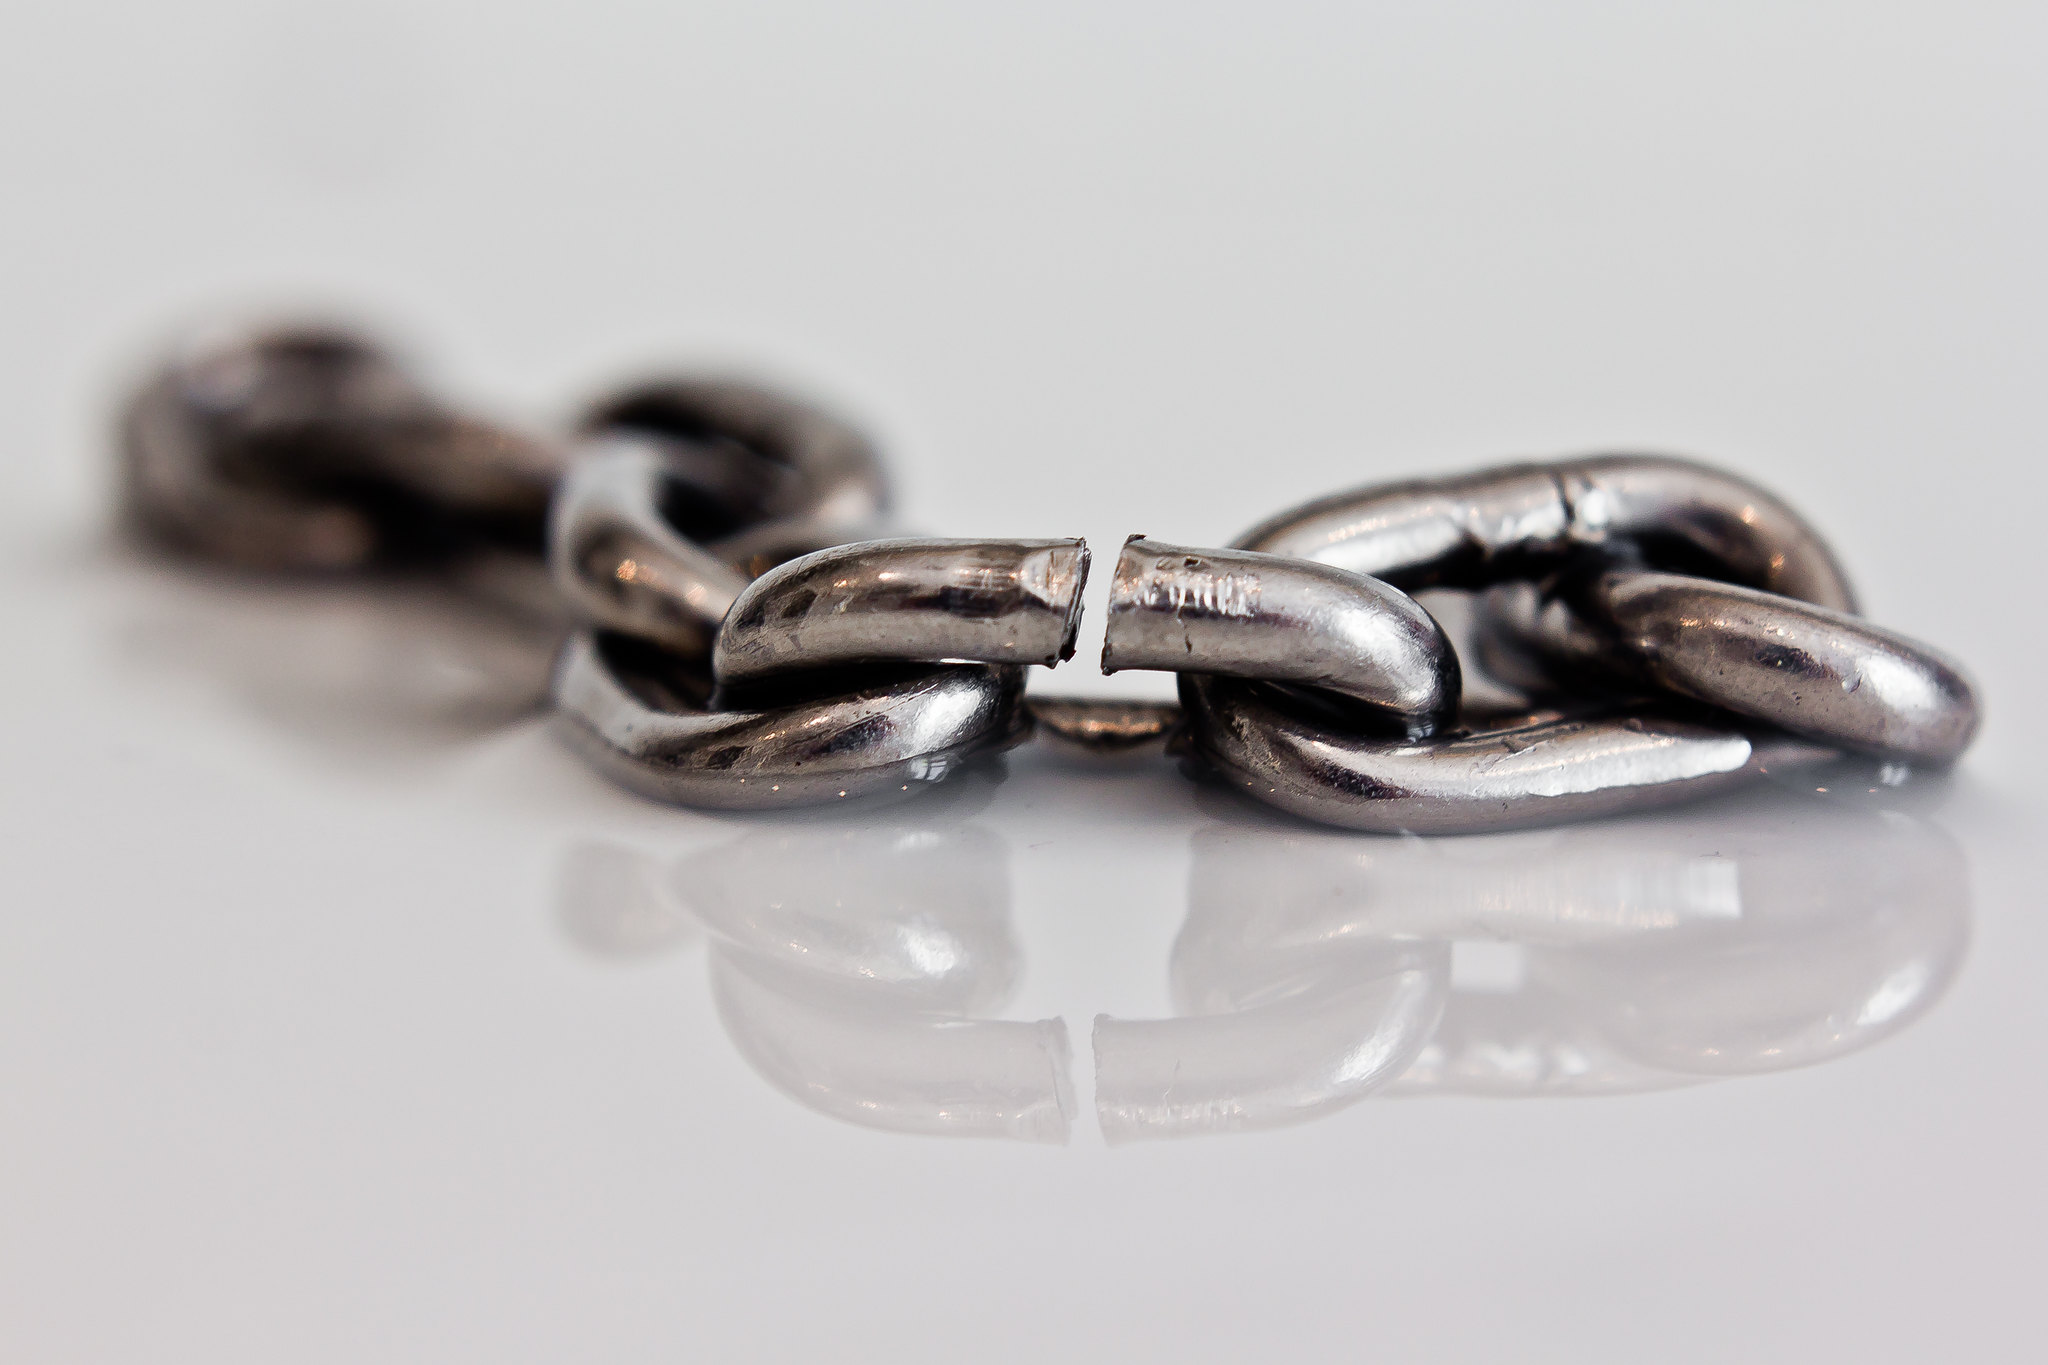 Las cadenas se cortan por el eslabón mas débil / Chains break by the weakest link